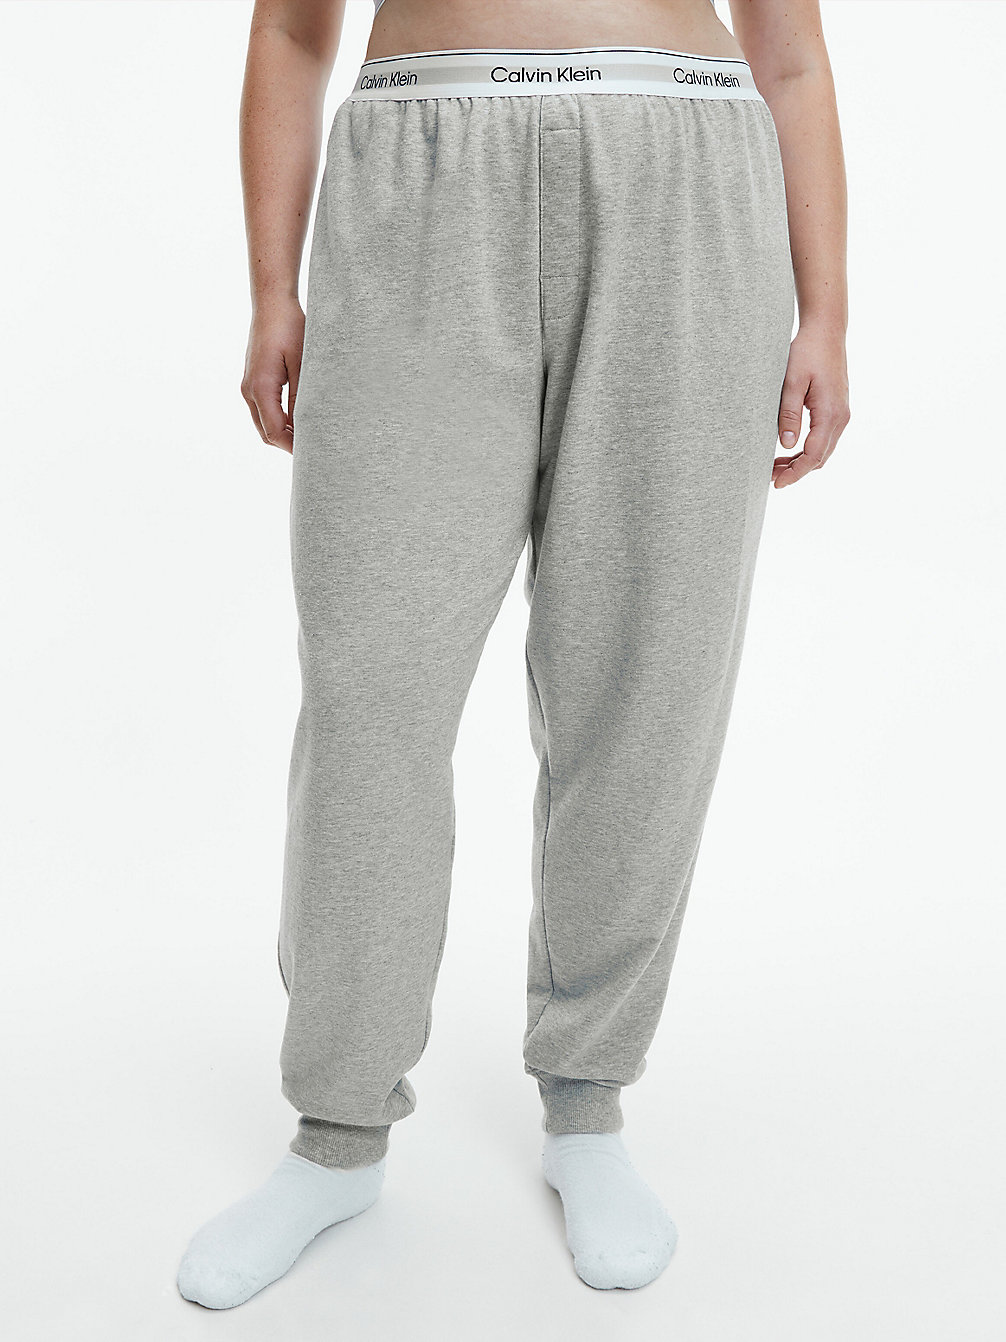 GREY HEATHER > Spodnie Od Piżamy Plus Size - Modern Cotton > undefined Kobiety - Calvin Klein